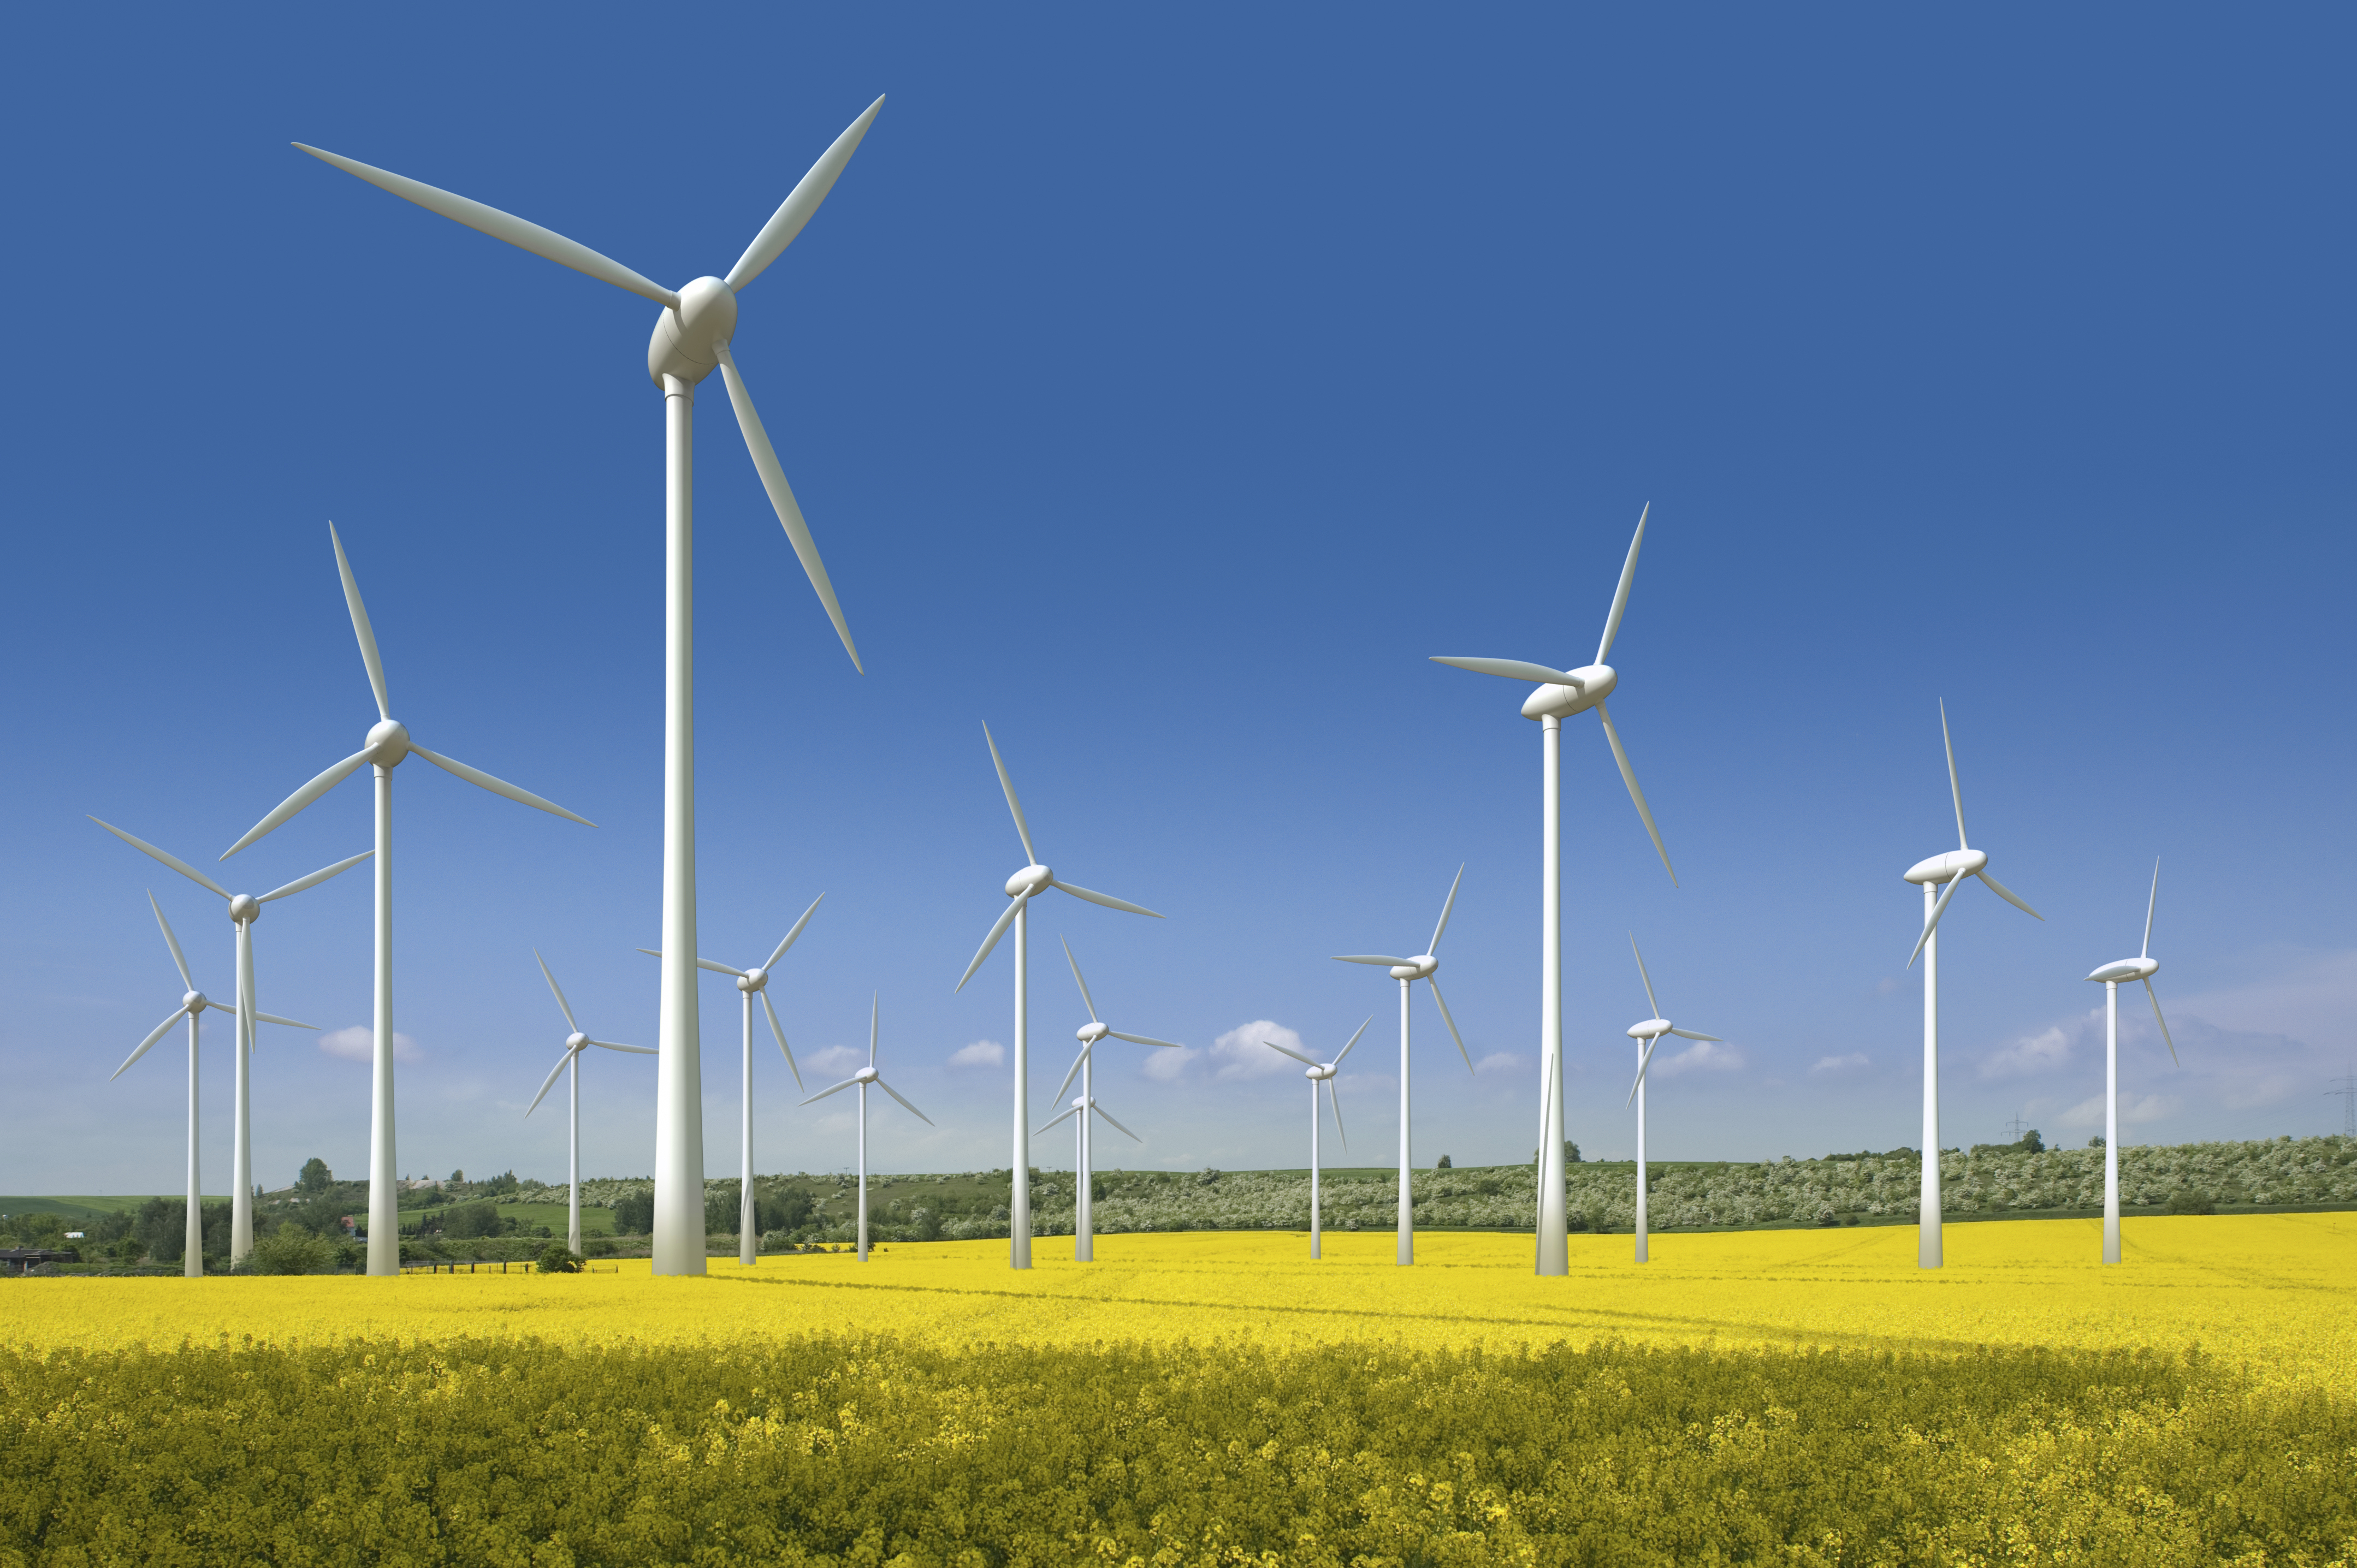 Впервые в истории ветряные электростанции произвели энергии больше, чем все АЭС на планете